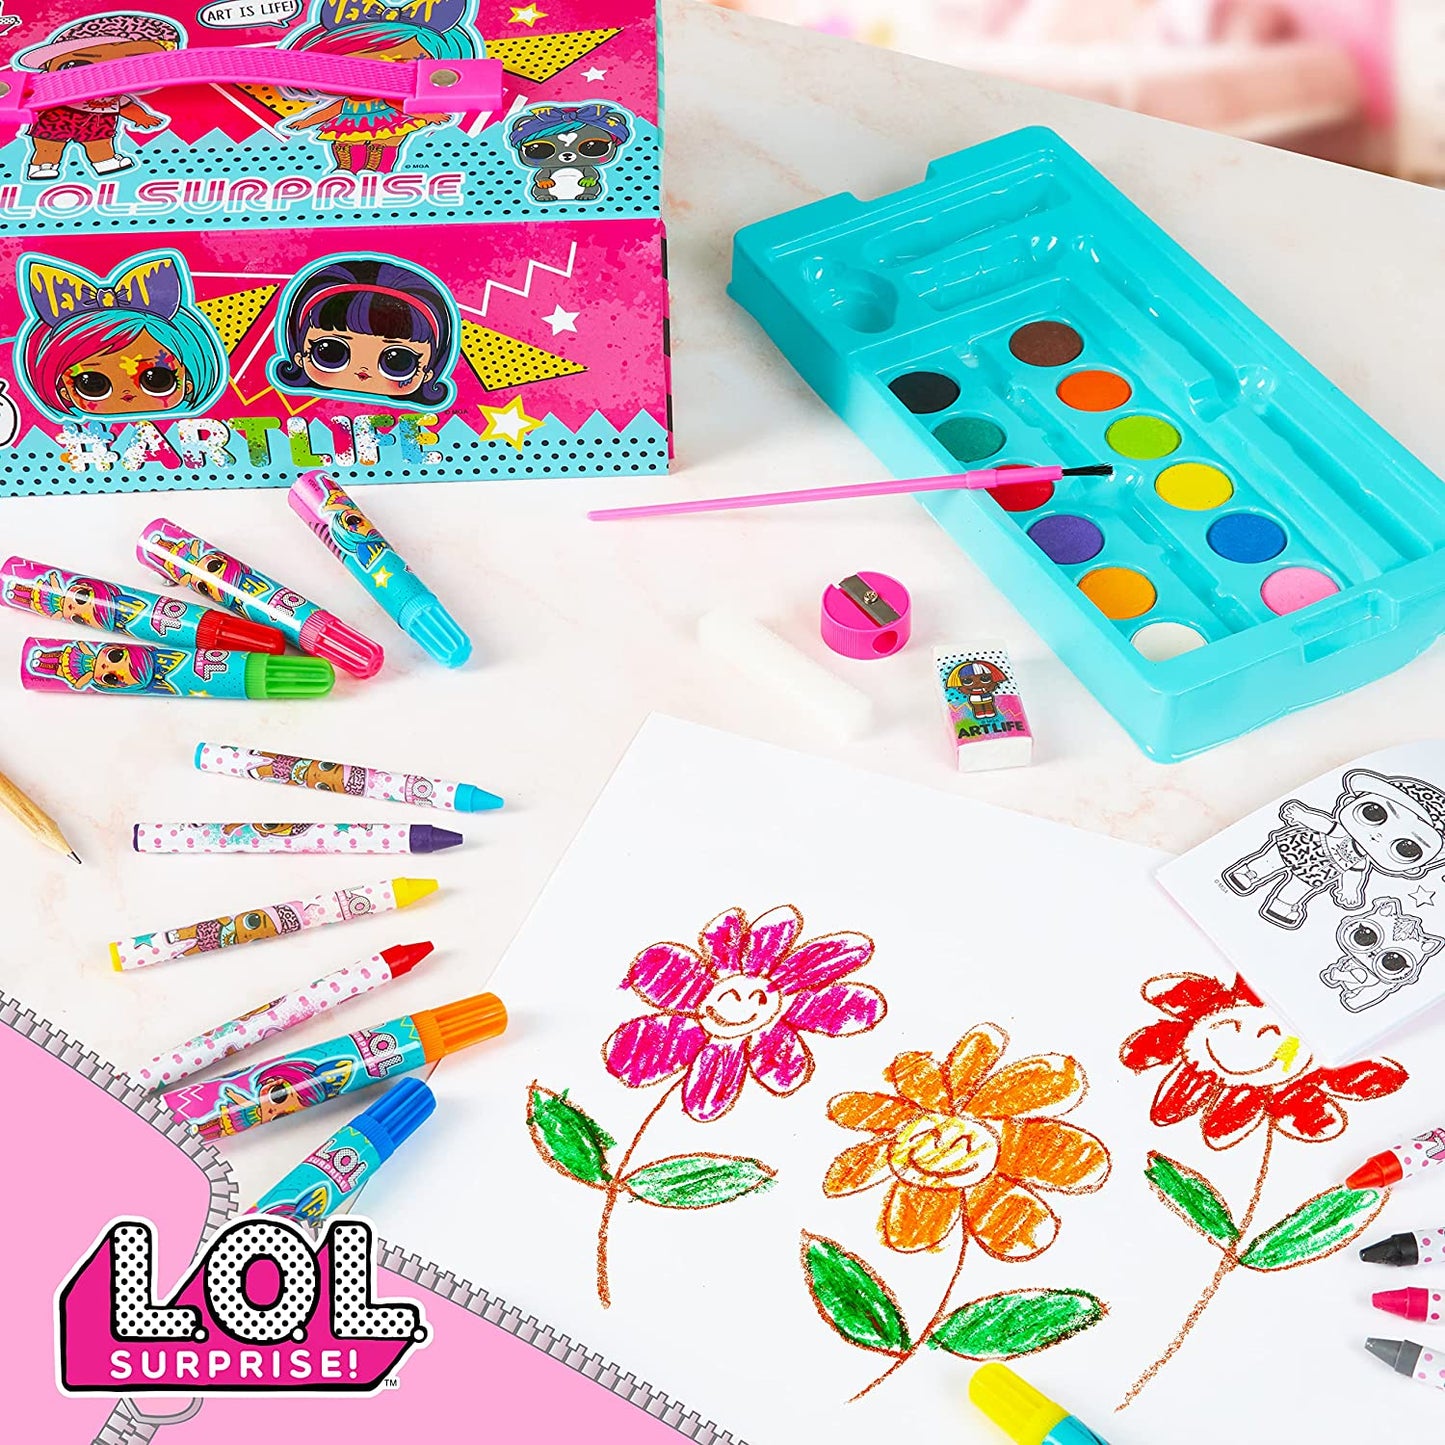 L.O.L. Surprise! Estojo para Colorir com Materiais de Arte para Crianças